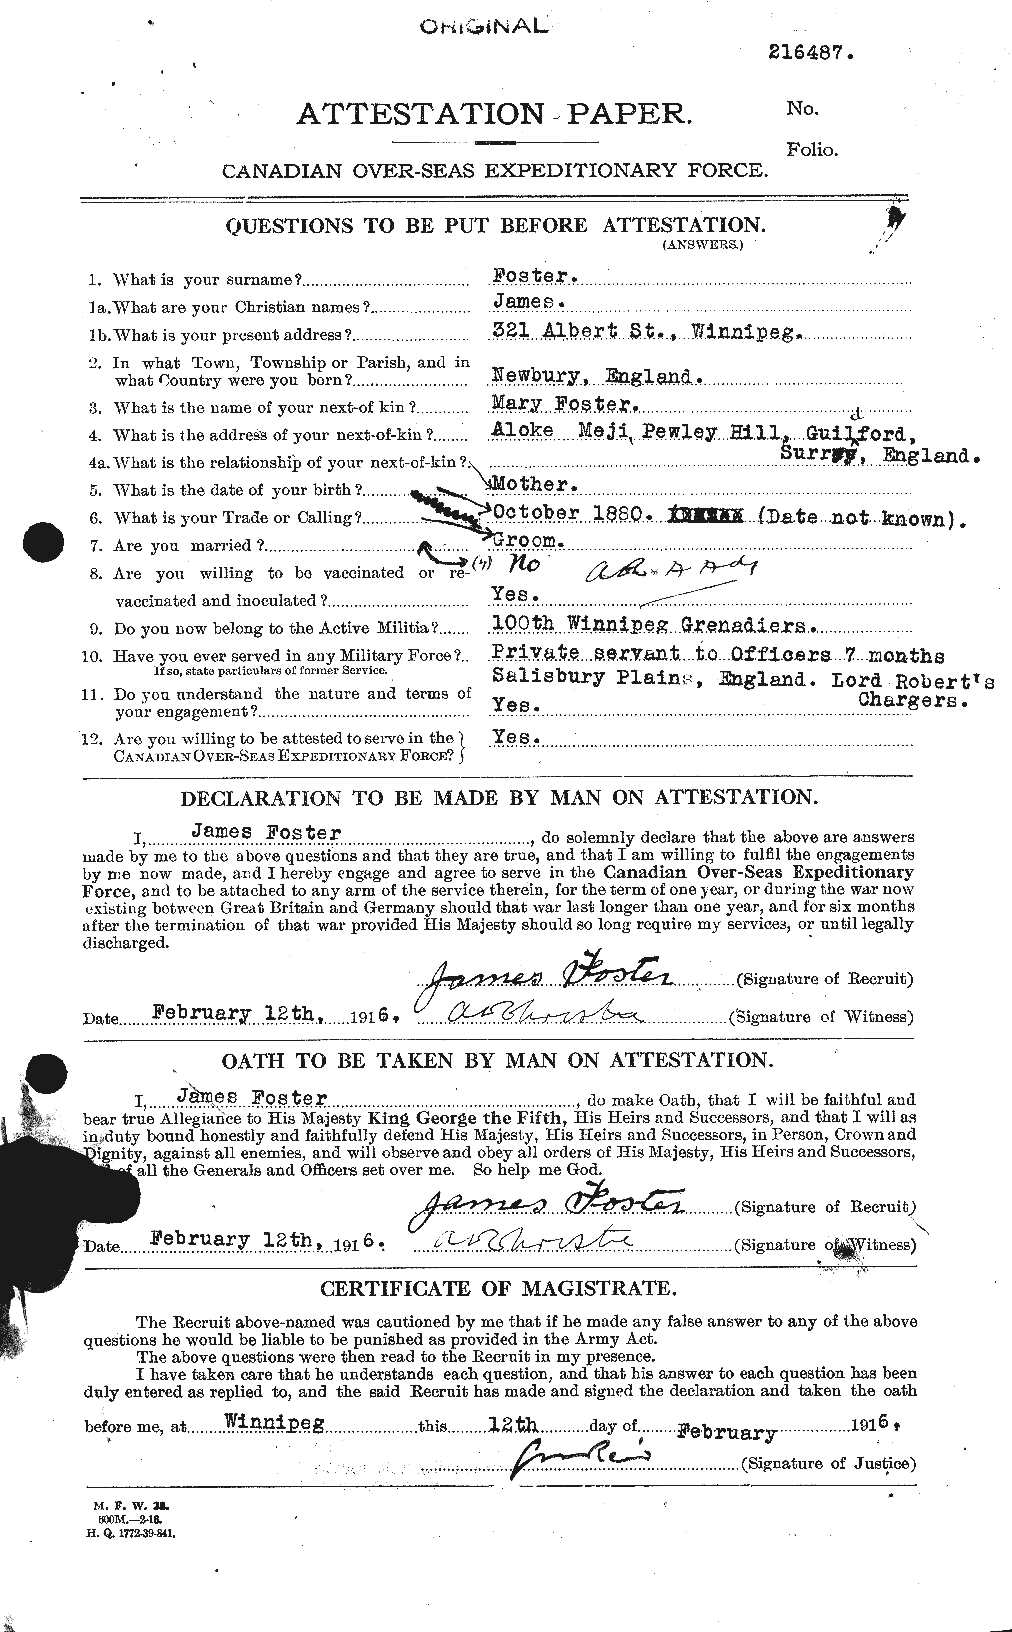 Dossiers du Personnel de la Première Guerre mondiale - CEC 333280a